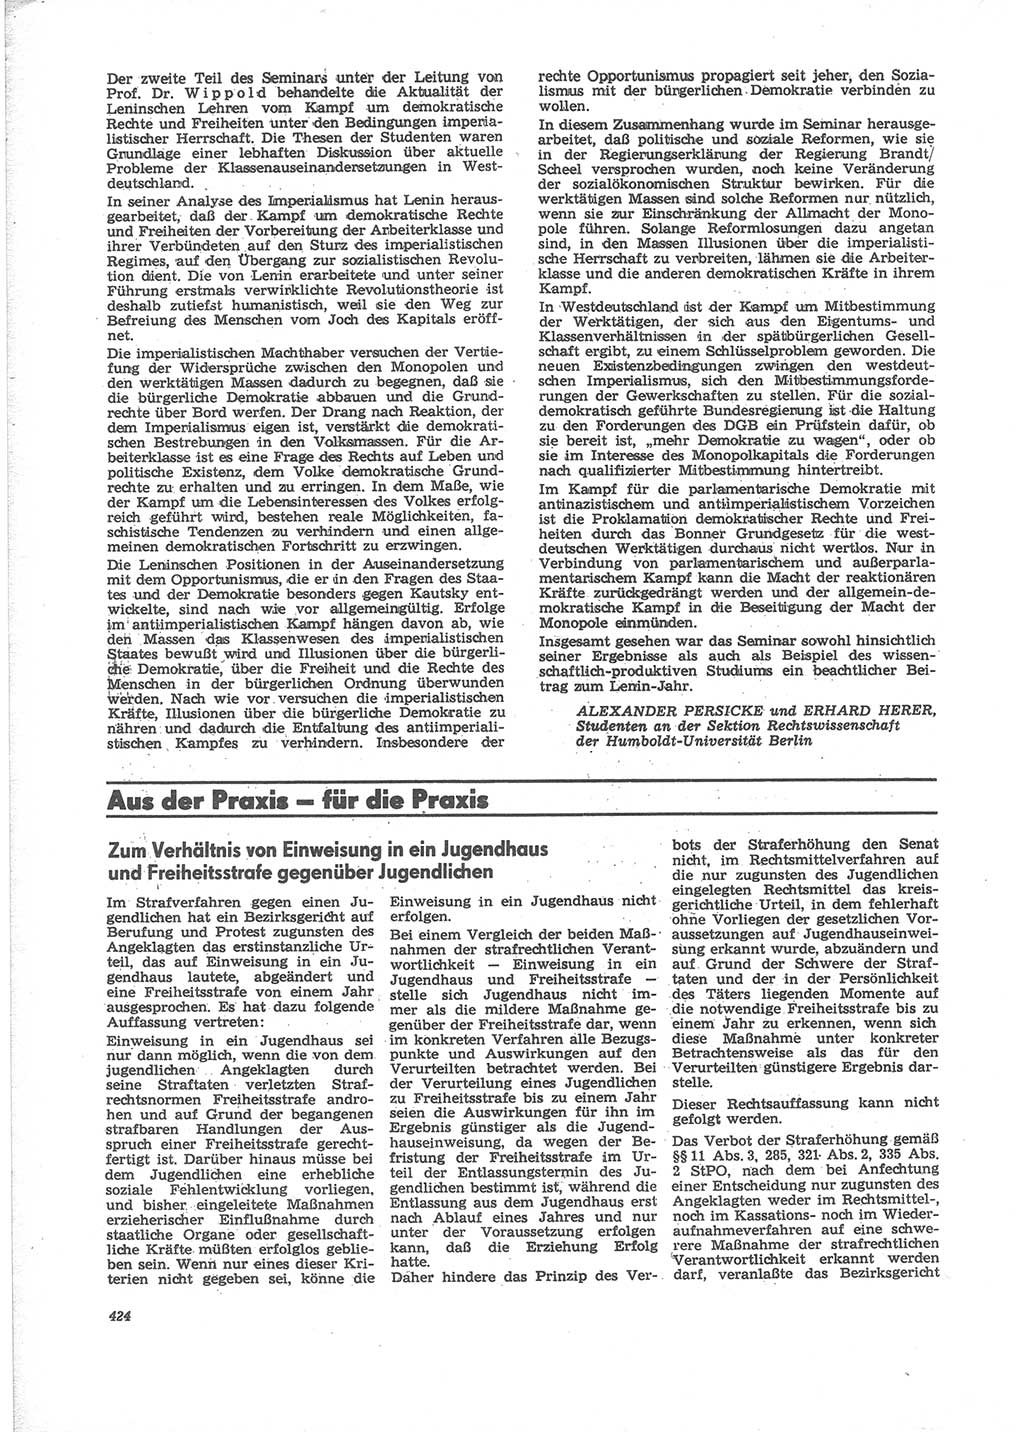 Neue Justiz (NJ), Zeitschrift für Recht und Rechtswissenschaft [Deutsche Demokratische Republik (DDR)], 24. Jahrgang 1970, Seite 424 (NJ DDR 1970, S. 424)